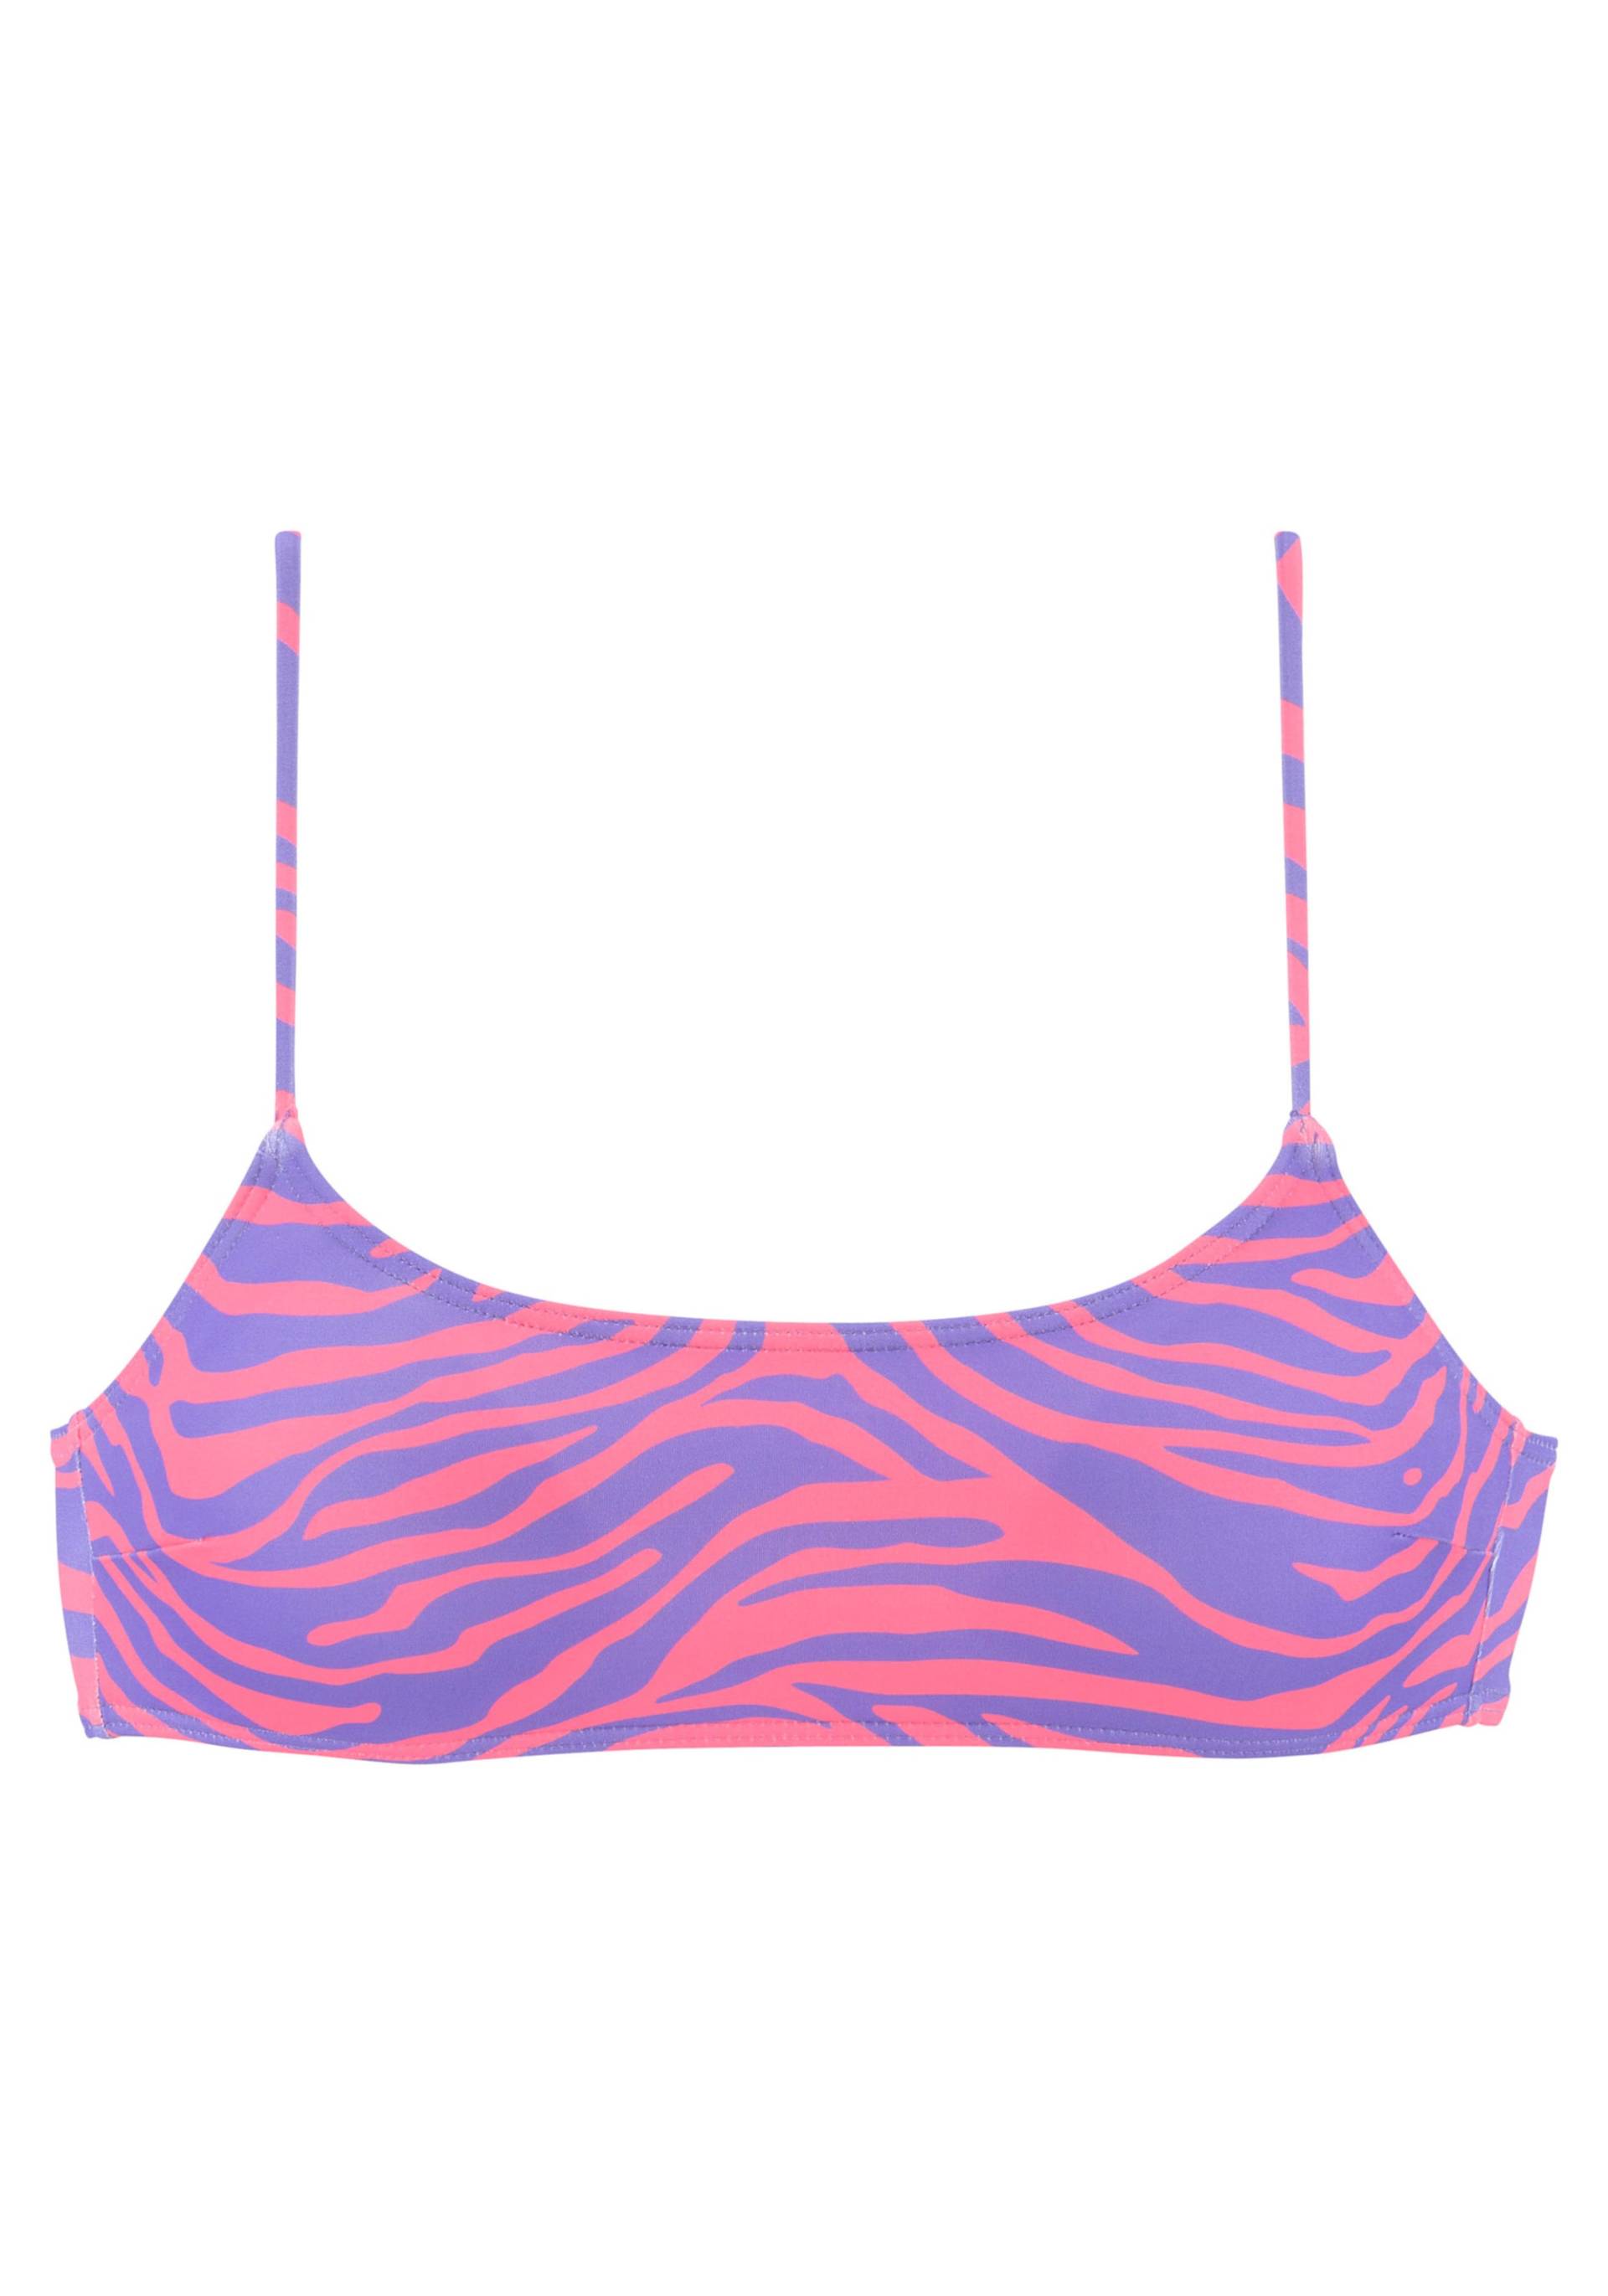 Bustier-Bikini-Top in violett-koralle von Venice Beach